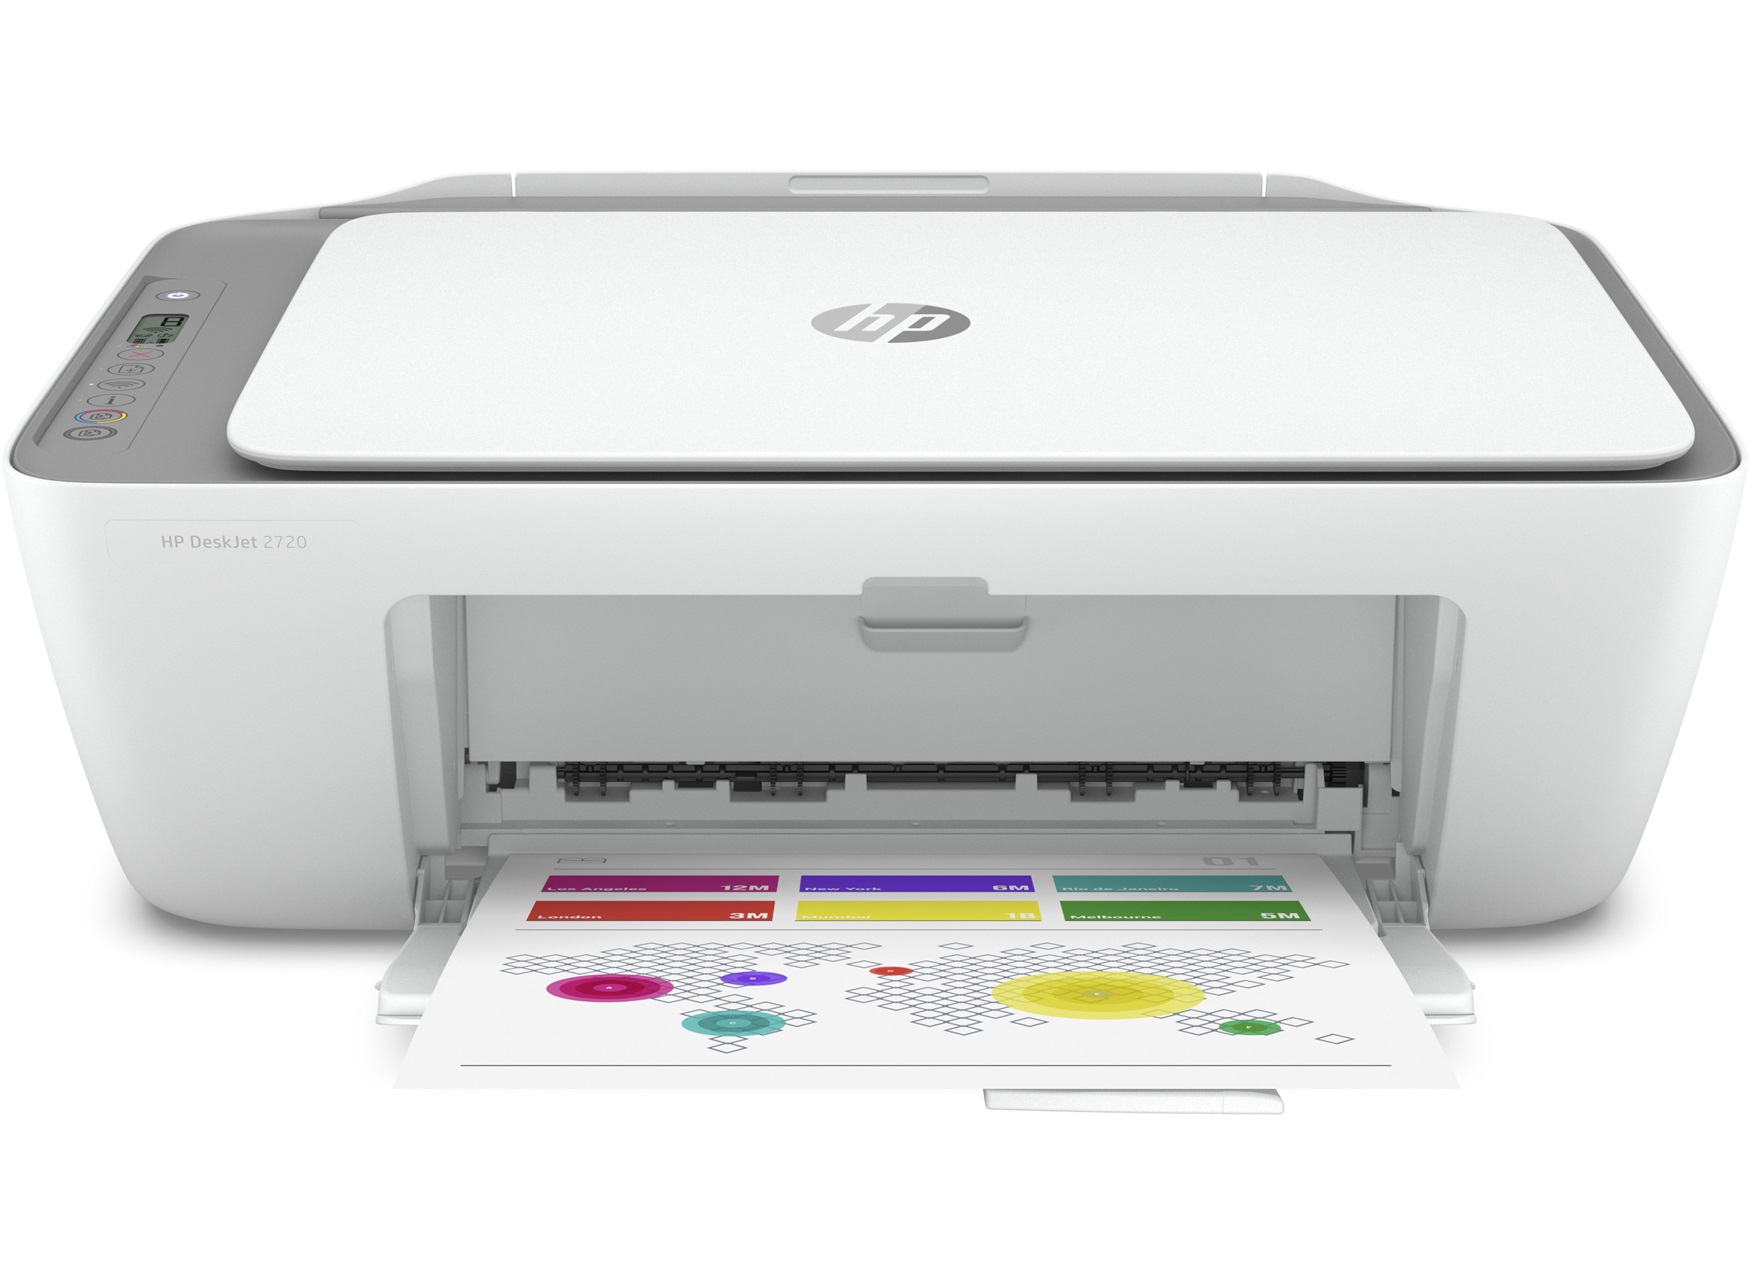 HP DeskJet 2720 – Máy in All-in-One chất lượng, giá phải chăng